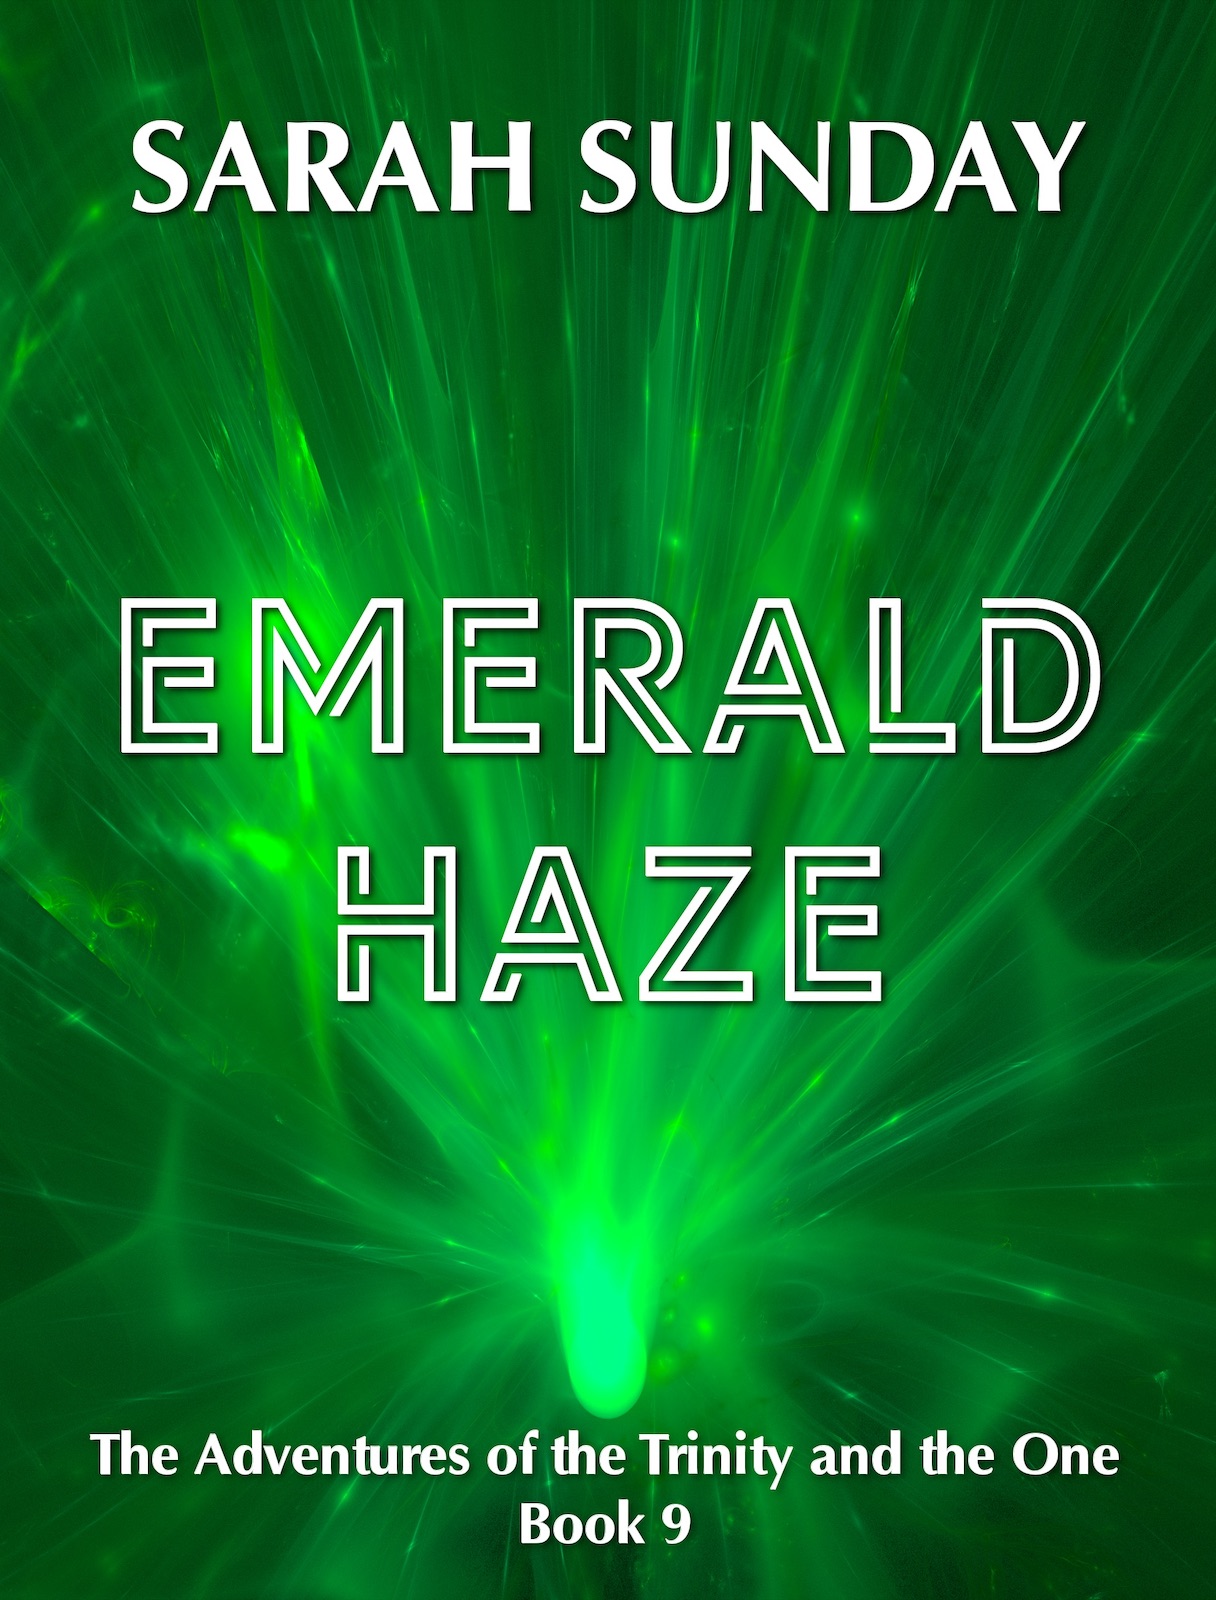 Emerald Haze RELEASED!